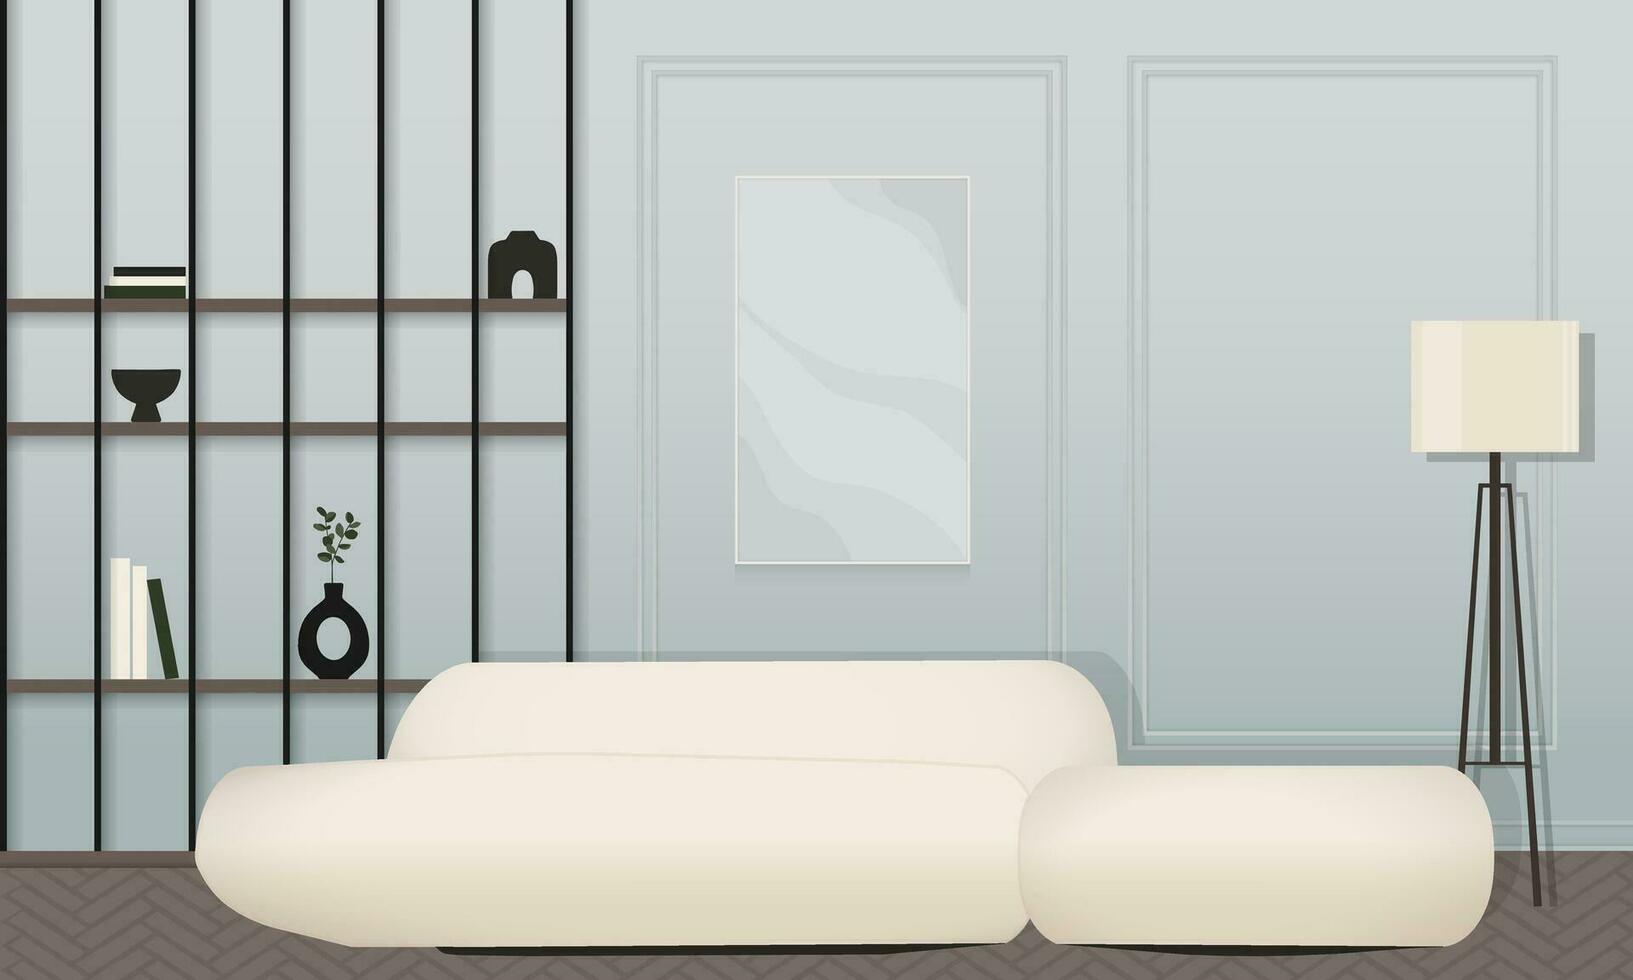 abstrakt minimal modern Leben Zimmer Innere Konzept im Pastell- Schatten von Blau, Beige und dunkel Holz Farbe. zum Konzept, Netz, Sozial Medien, Banner, Vorschlag vektor